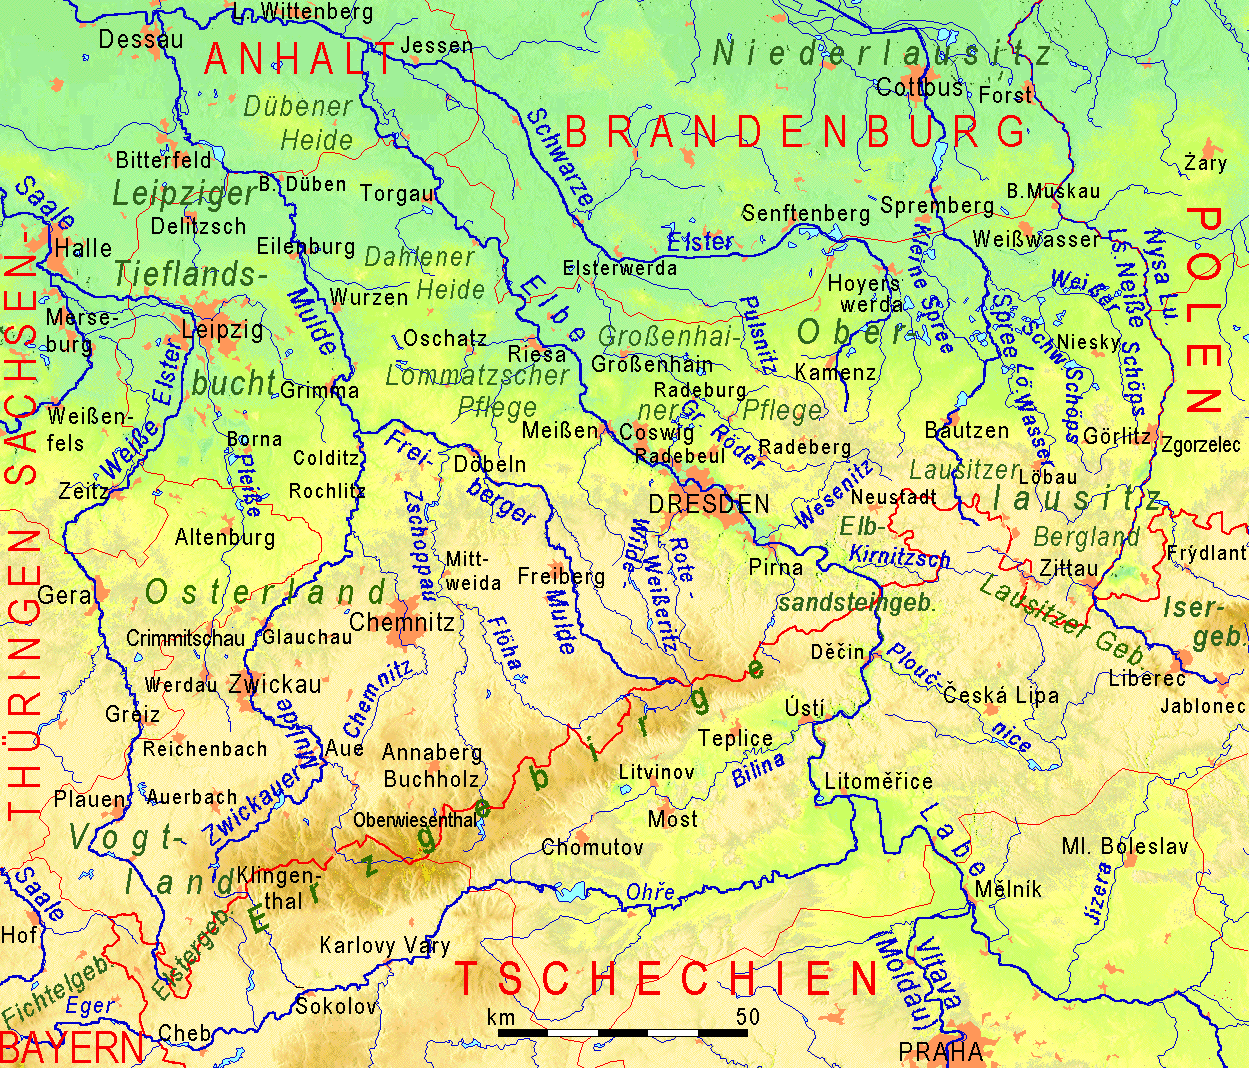 Liste der Regionen in Sachsen